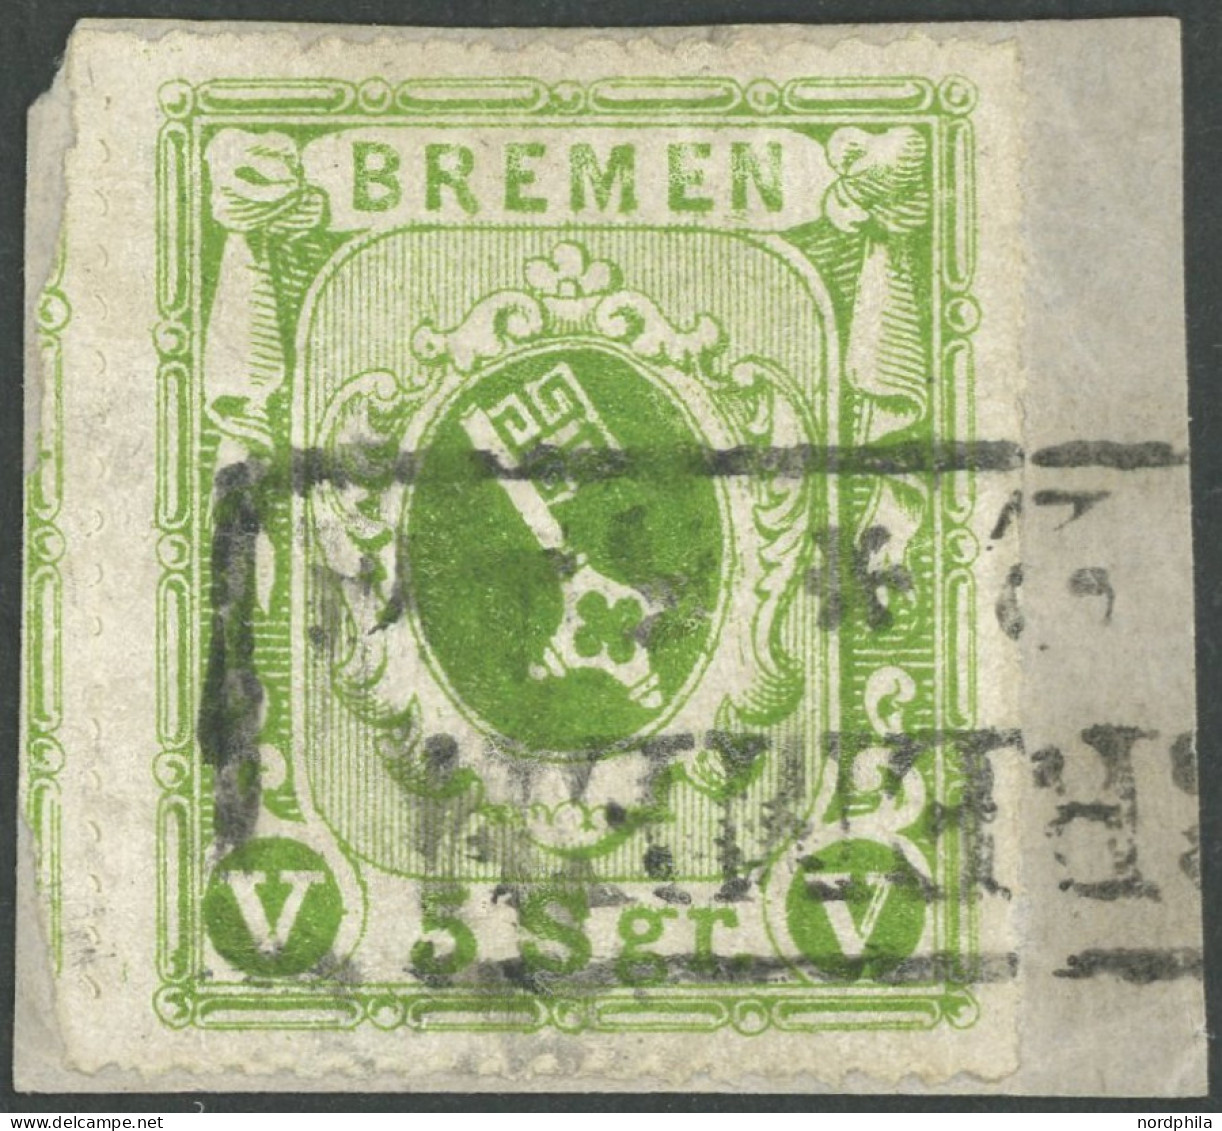 BREMEN 9c BrfStk, 1863, 5 Sgr. Dunkelgelblichgrün, Kabinettbriefstück, Signiert Köhler Und R.F. Engel, Mi. (600.-) - Brême